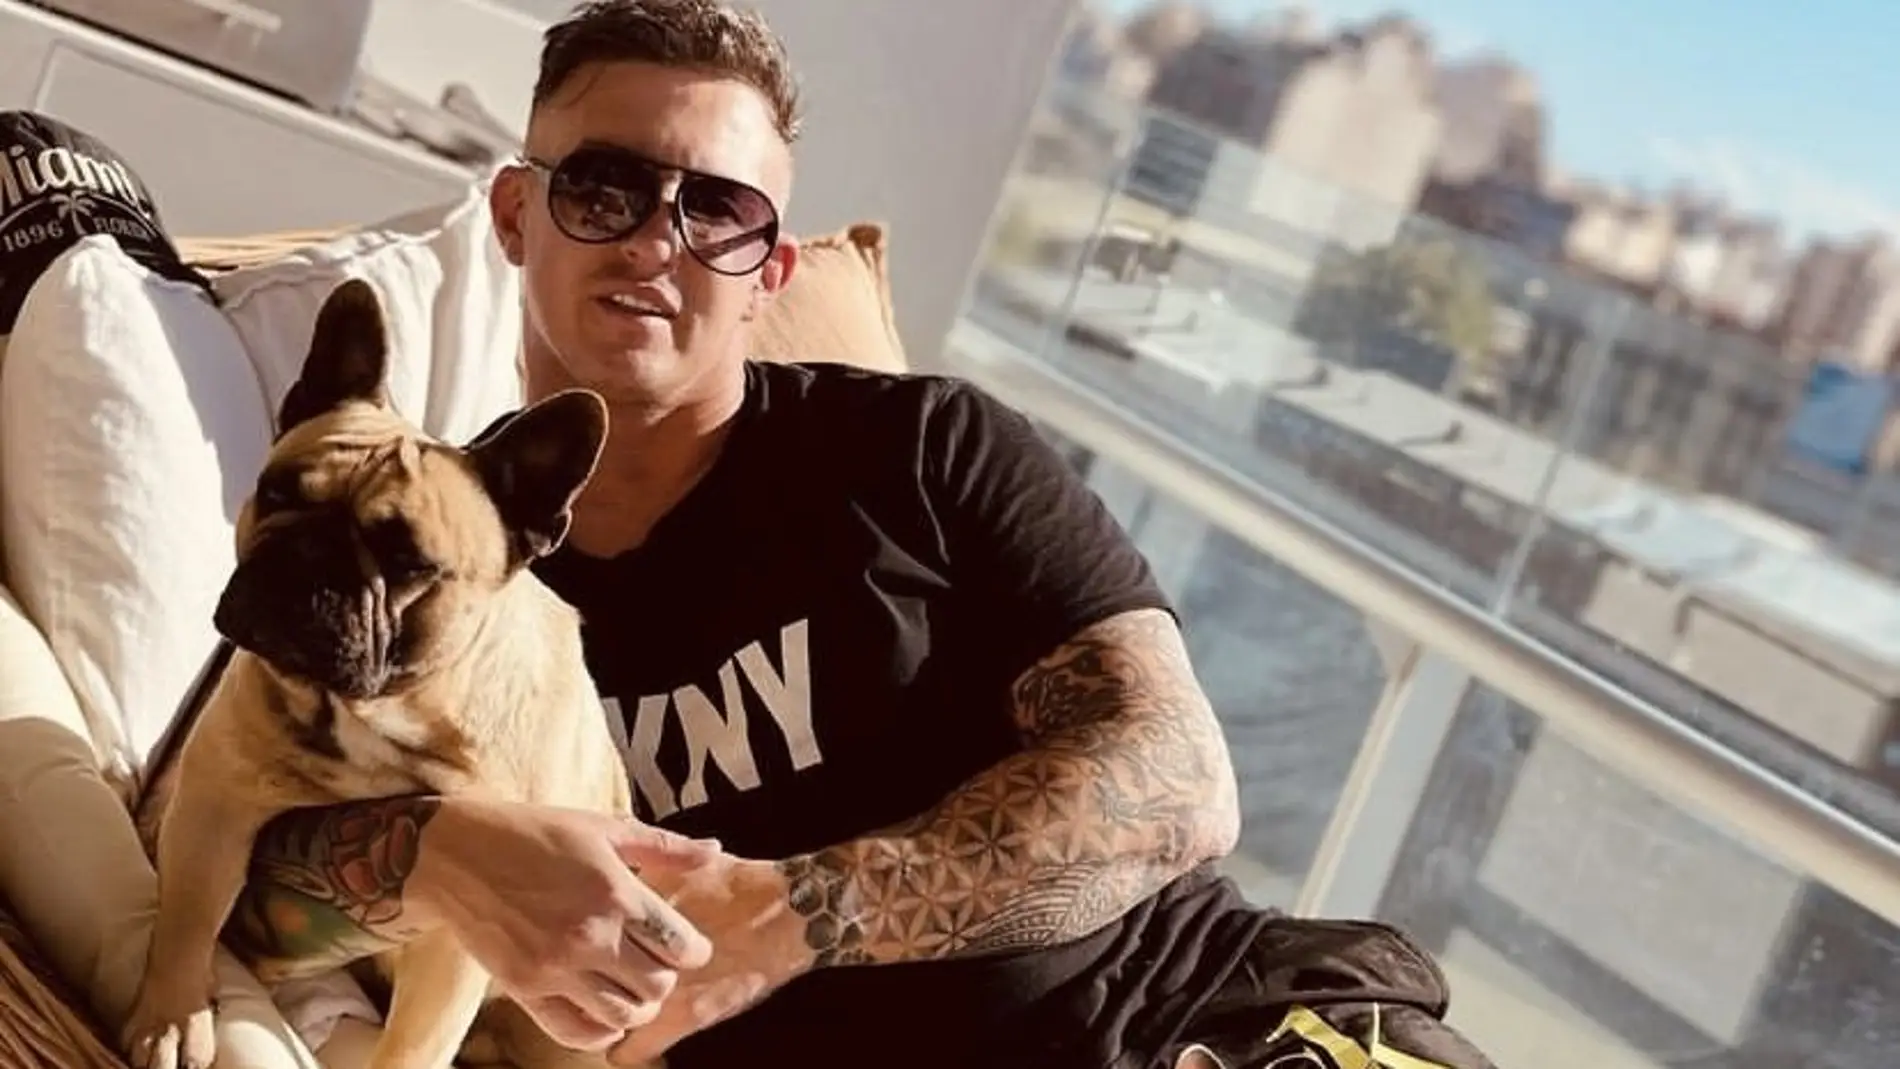 El empresario con su perro 'Cooper' en su perfil de Instagram con casi 1 millón de seguidores